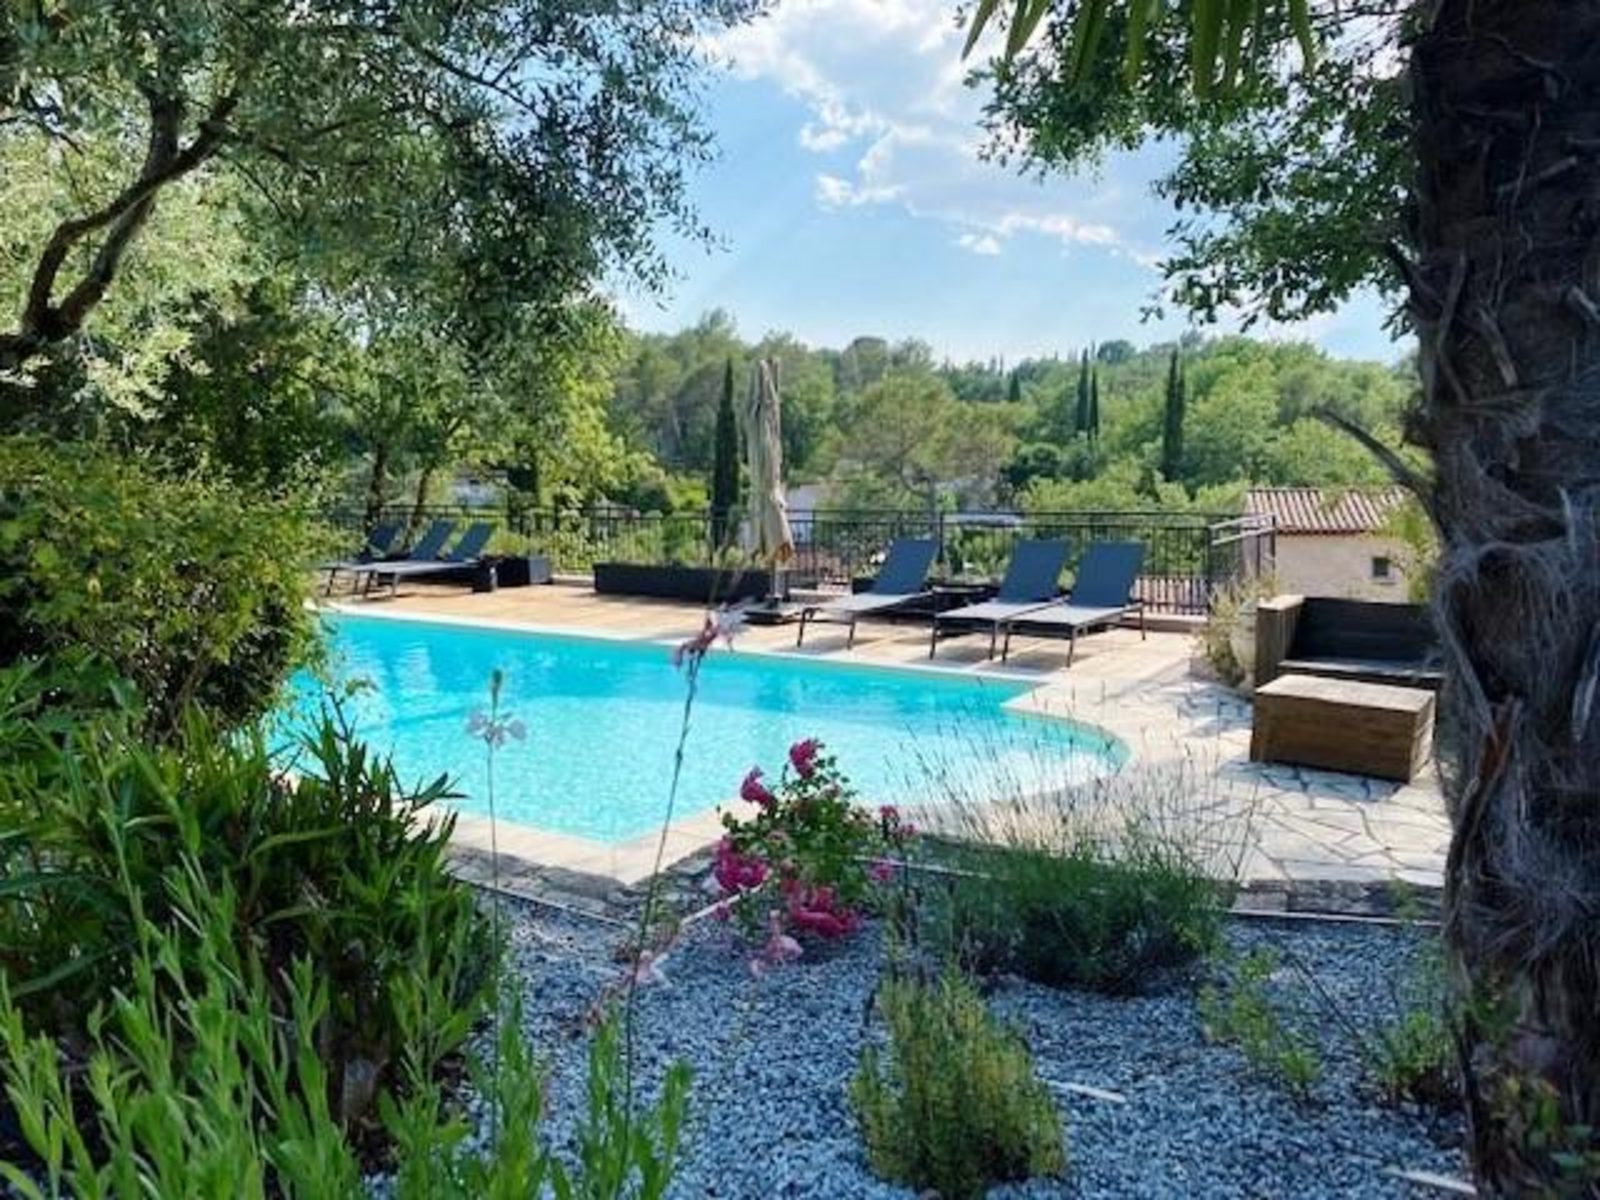 Villa Timo - vakantiehuis met zwembad in Zuid-Frankrijk